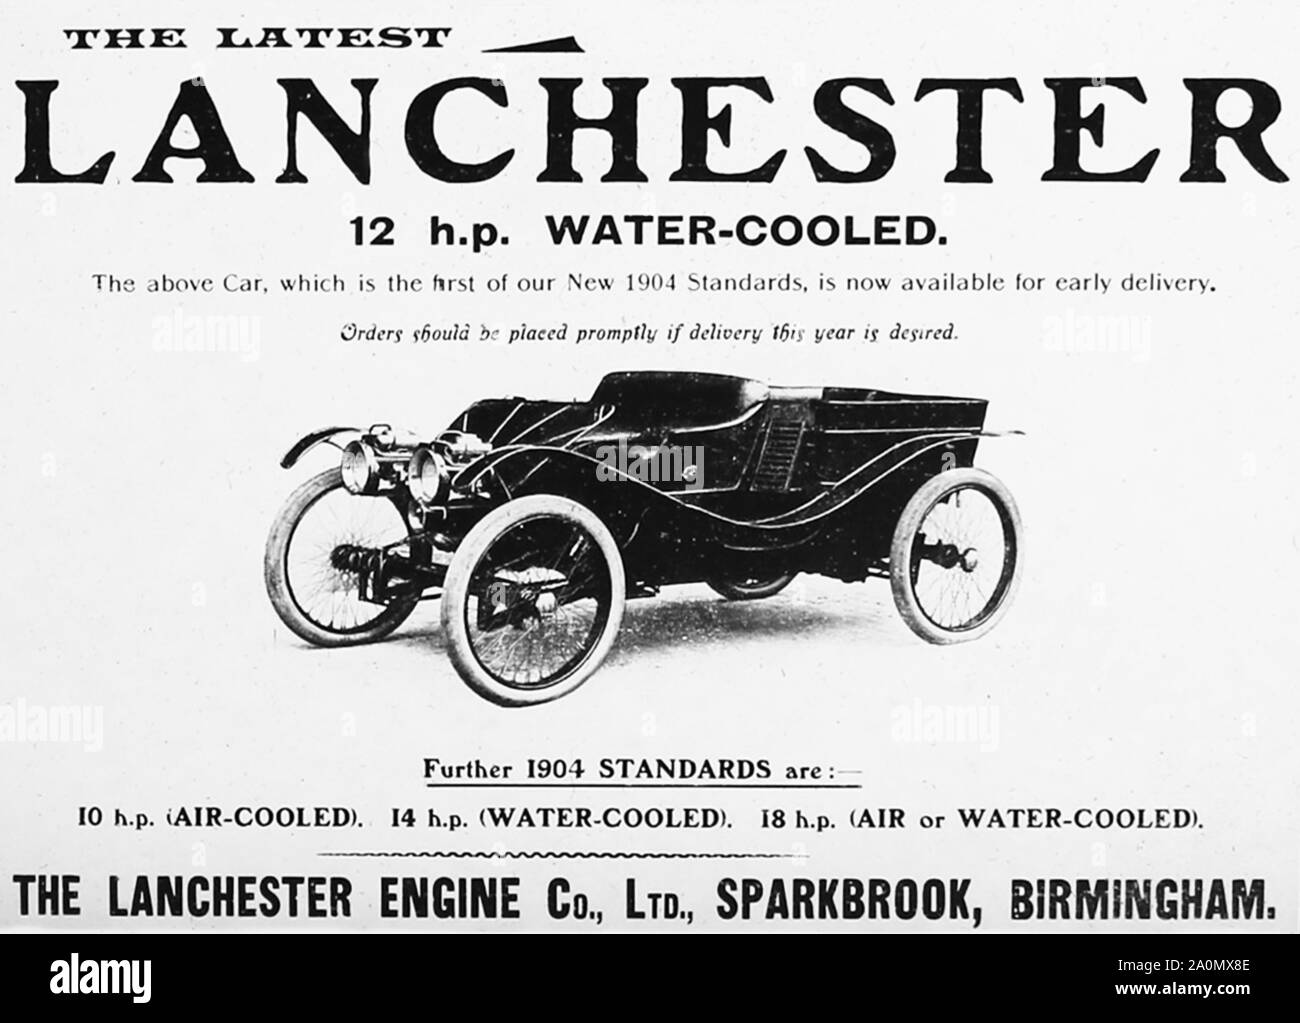 Lanchester veterano coche anuncio, 1900 Foto de stock